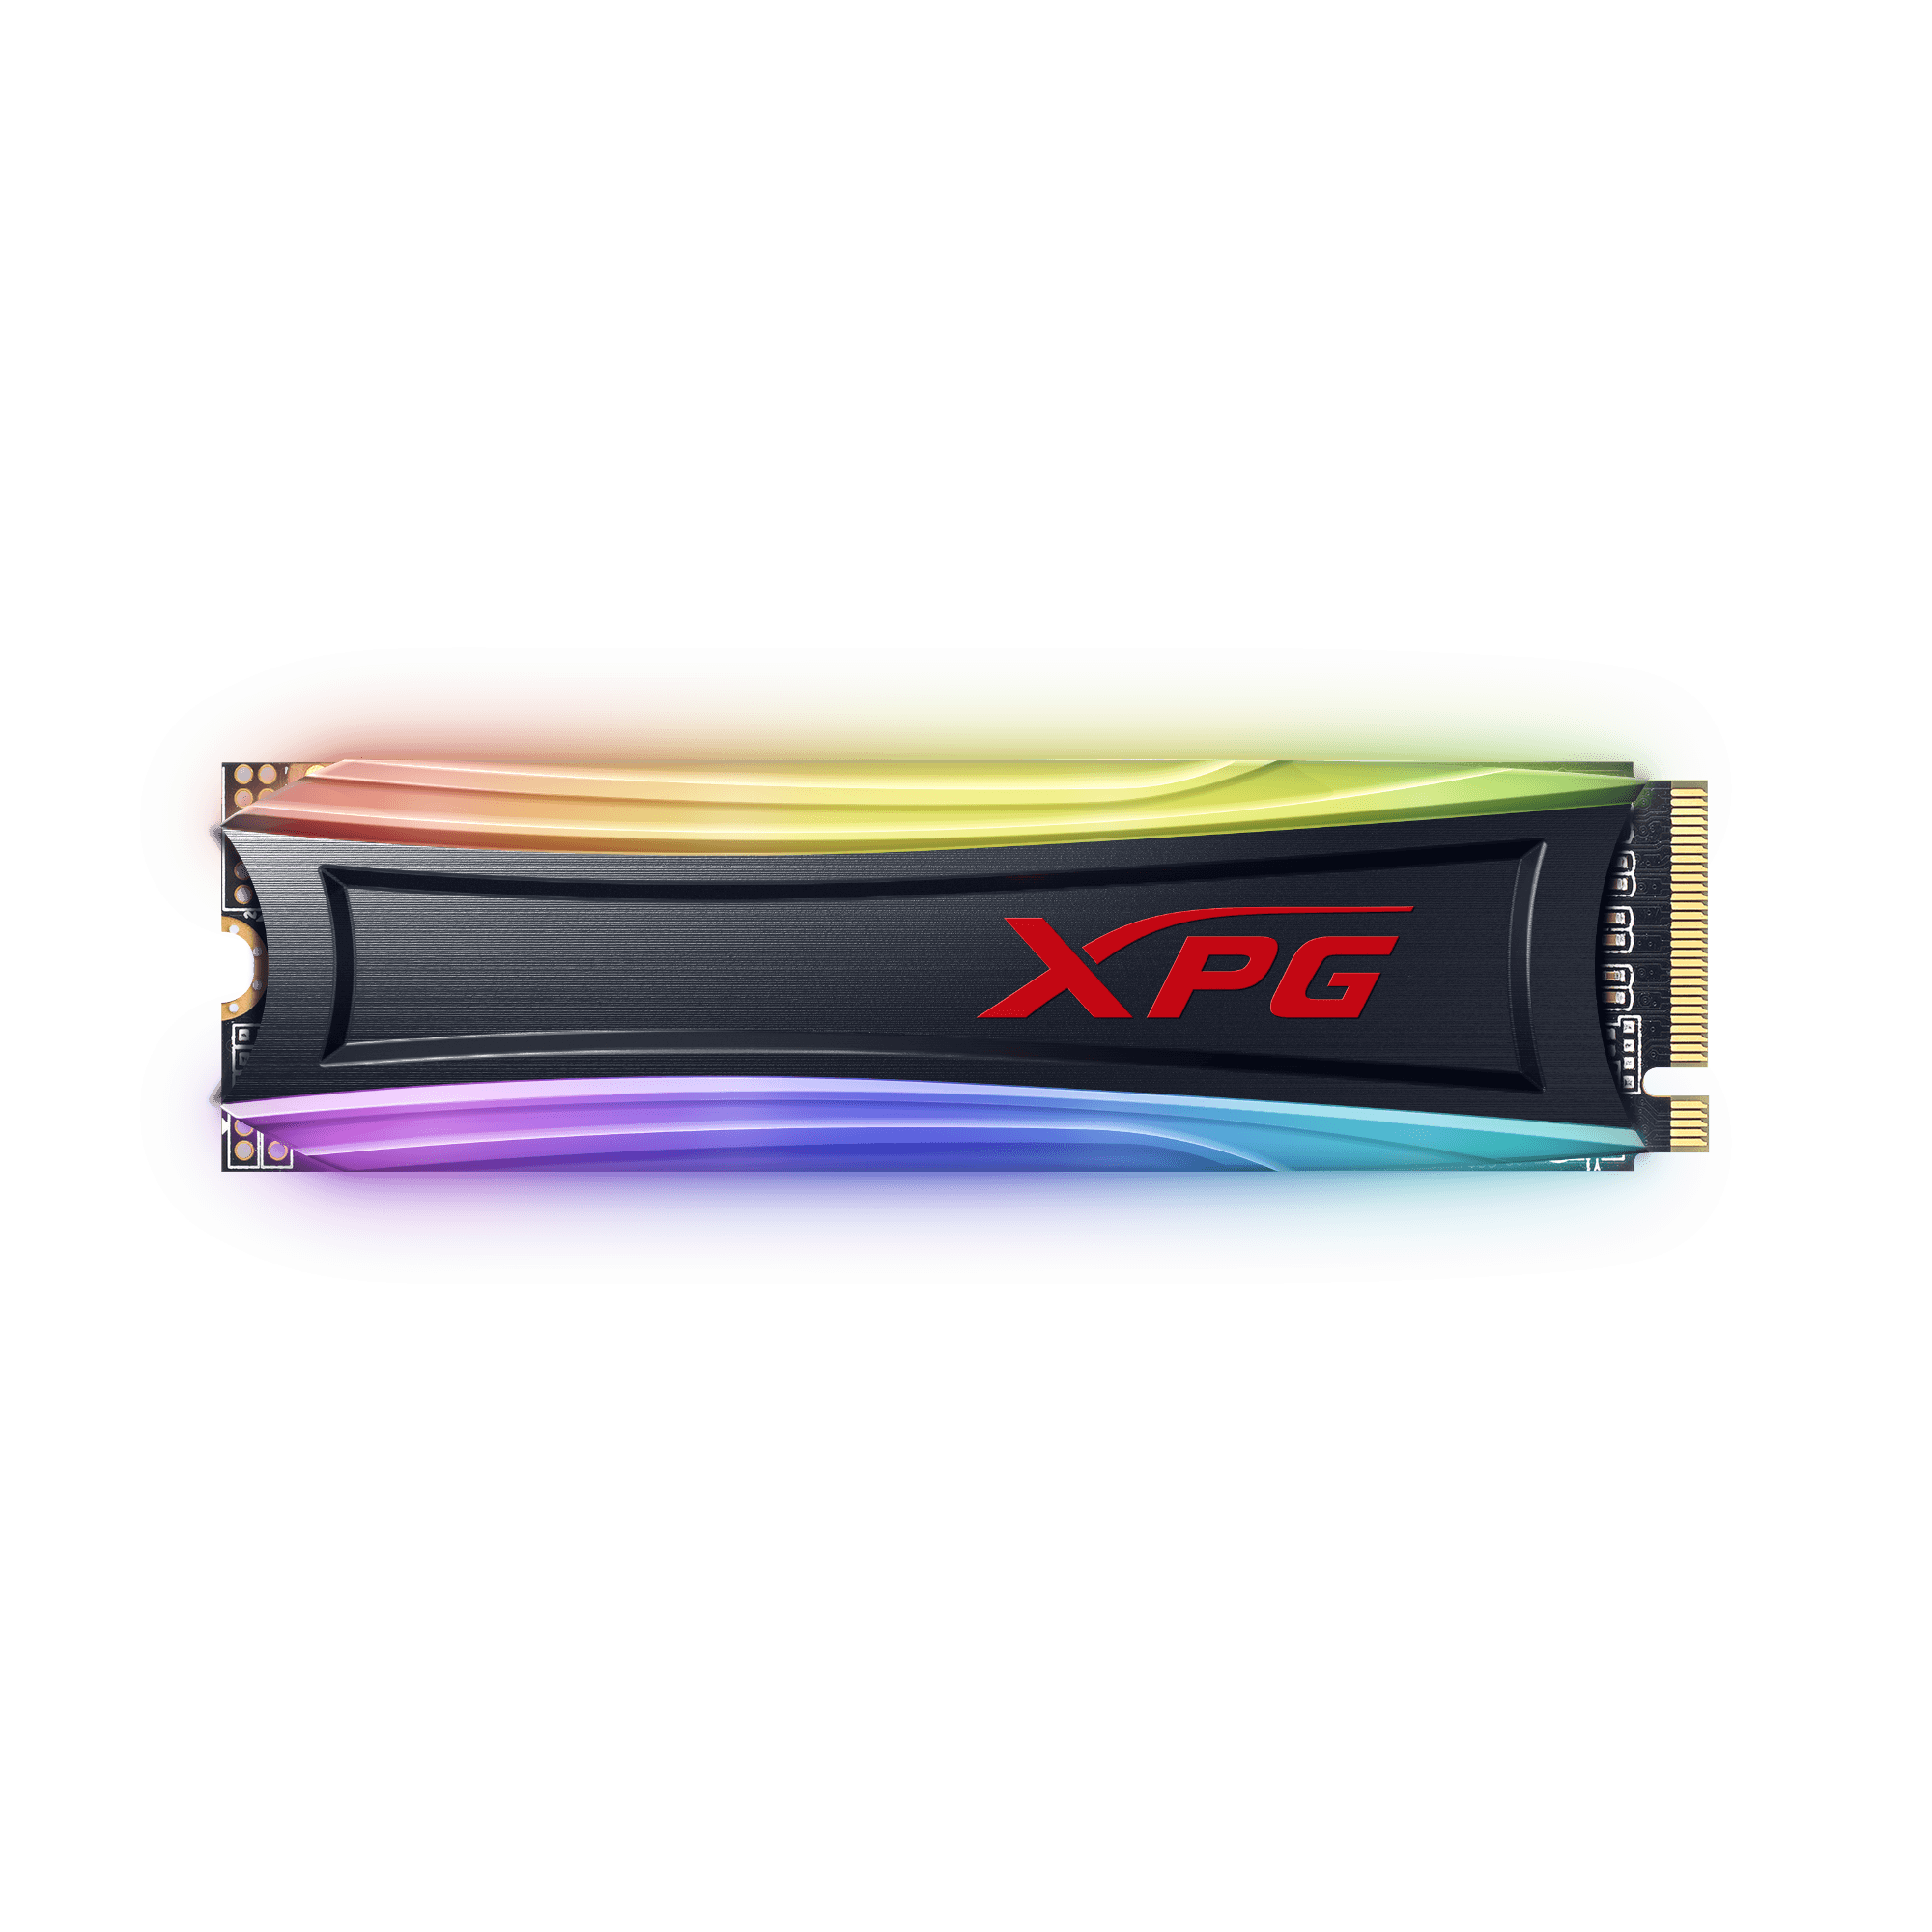  Ổ CỨNG SSD ADATA XPG AS40G 512GB M.2 PCIe Tản nhiệt LED RGB 